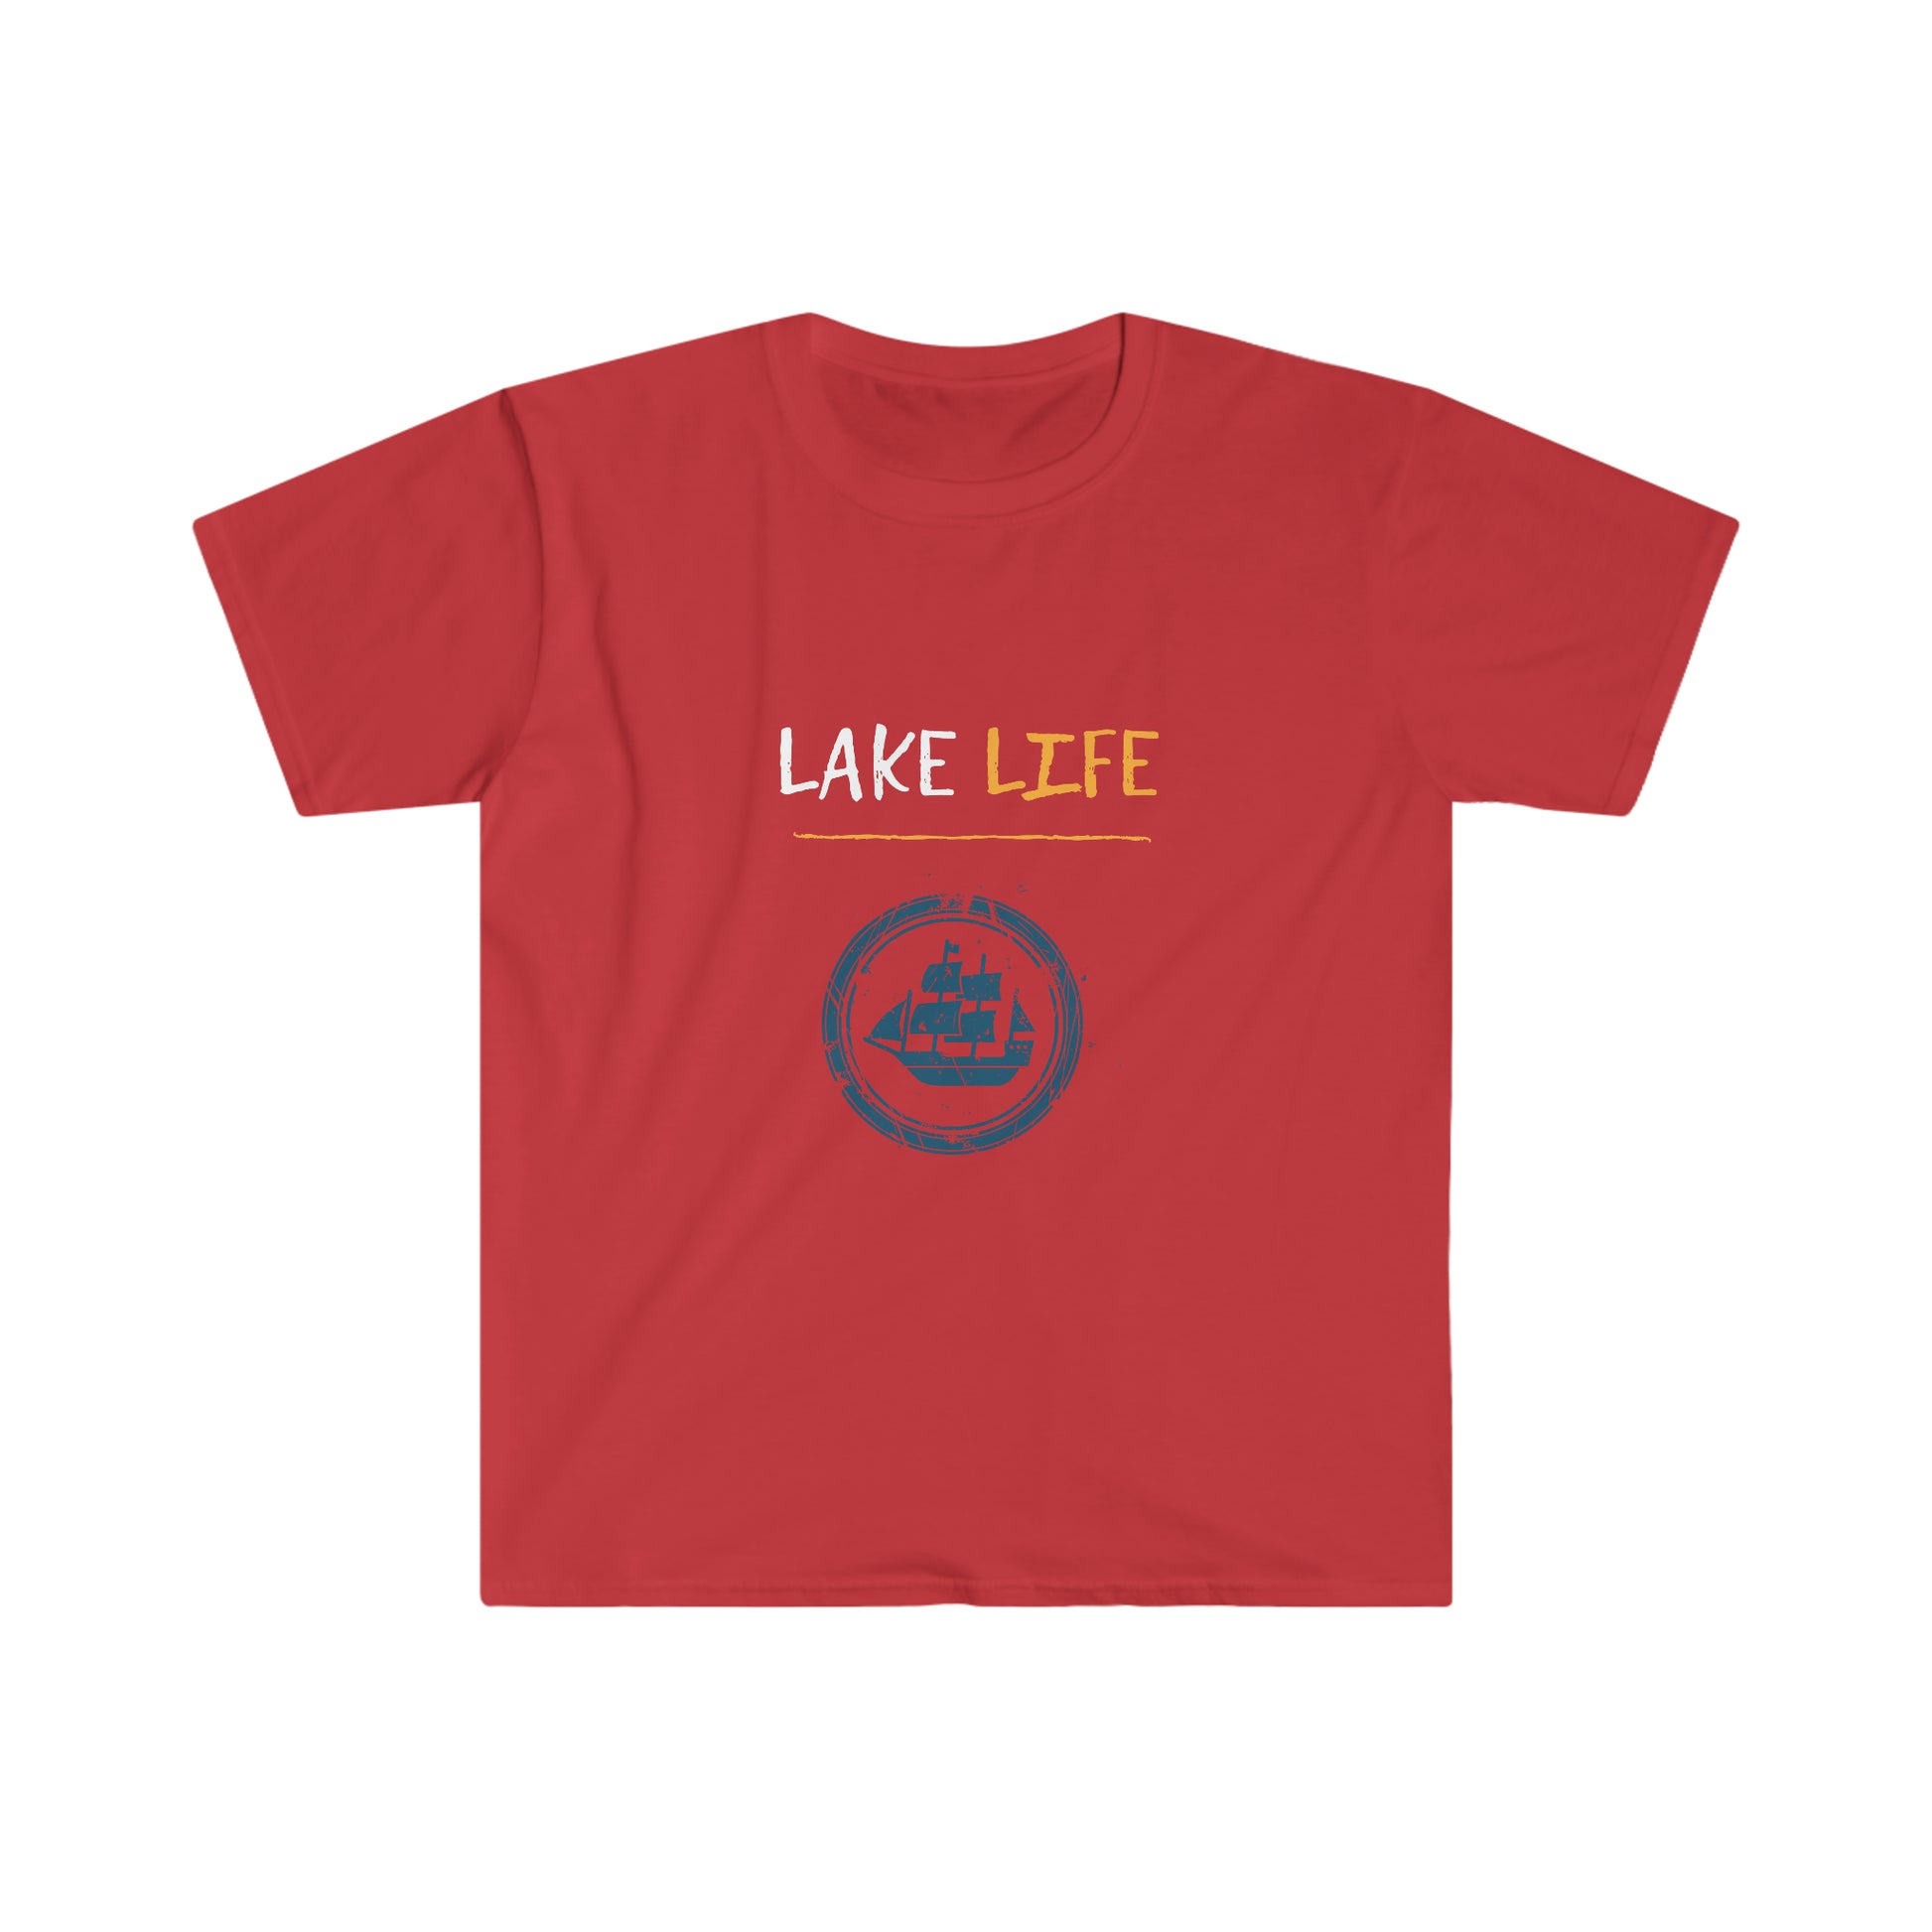 Lake Life - Sail Boat - Urban Camper